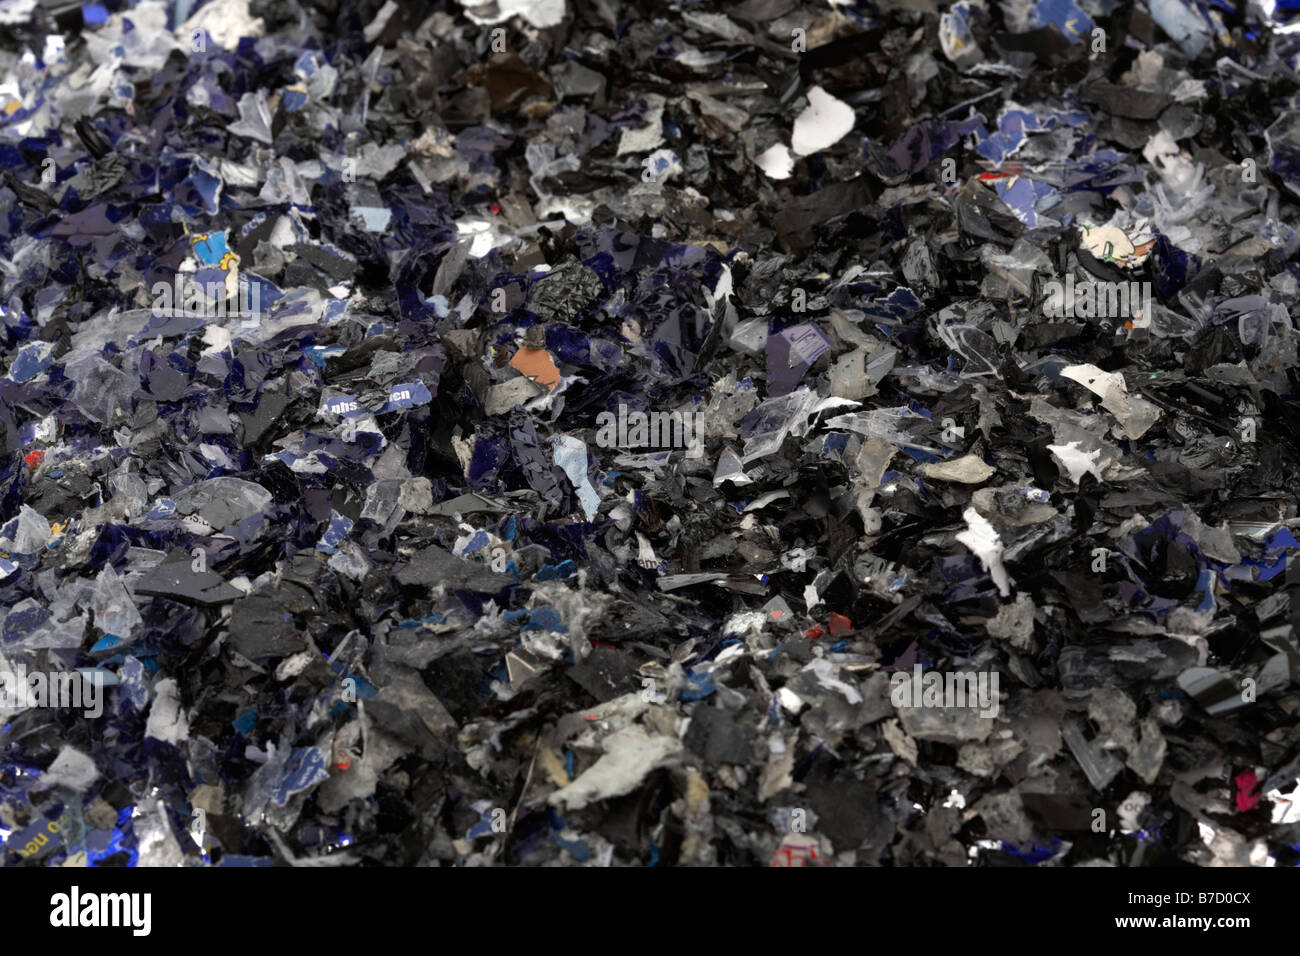 pile of shredded magnetic media Stock Photo